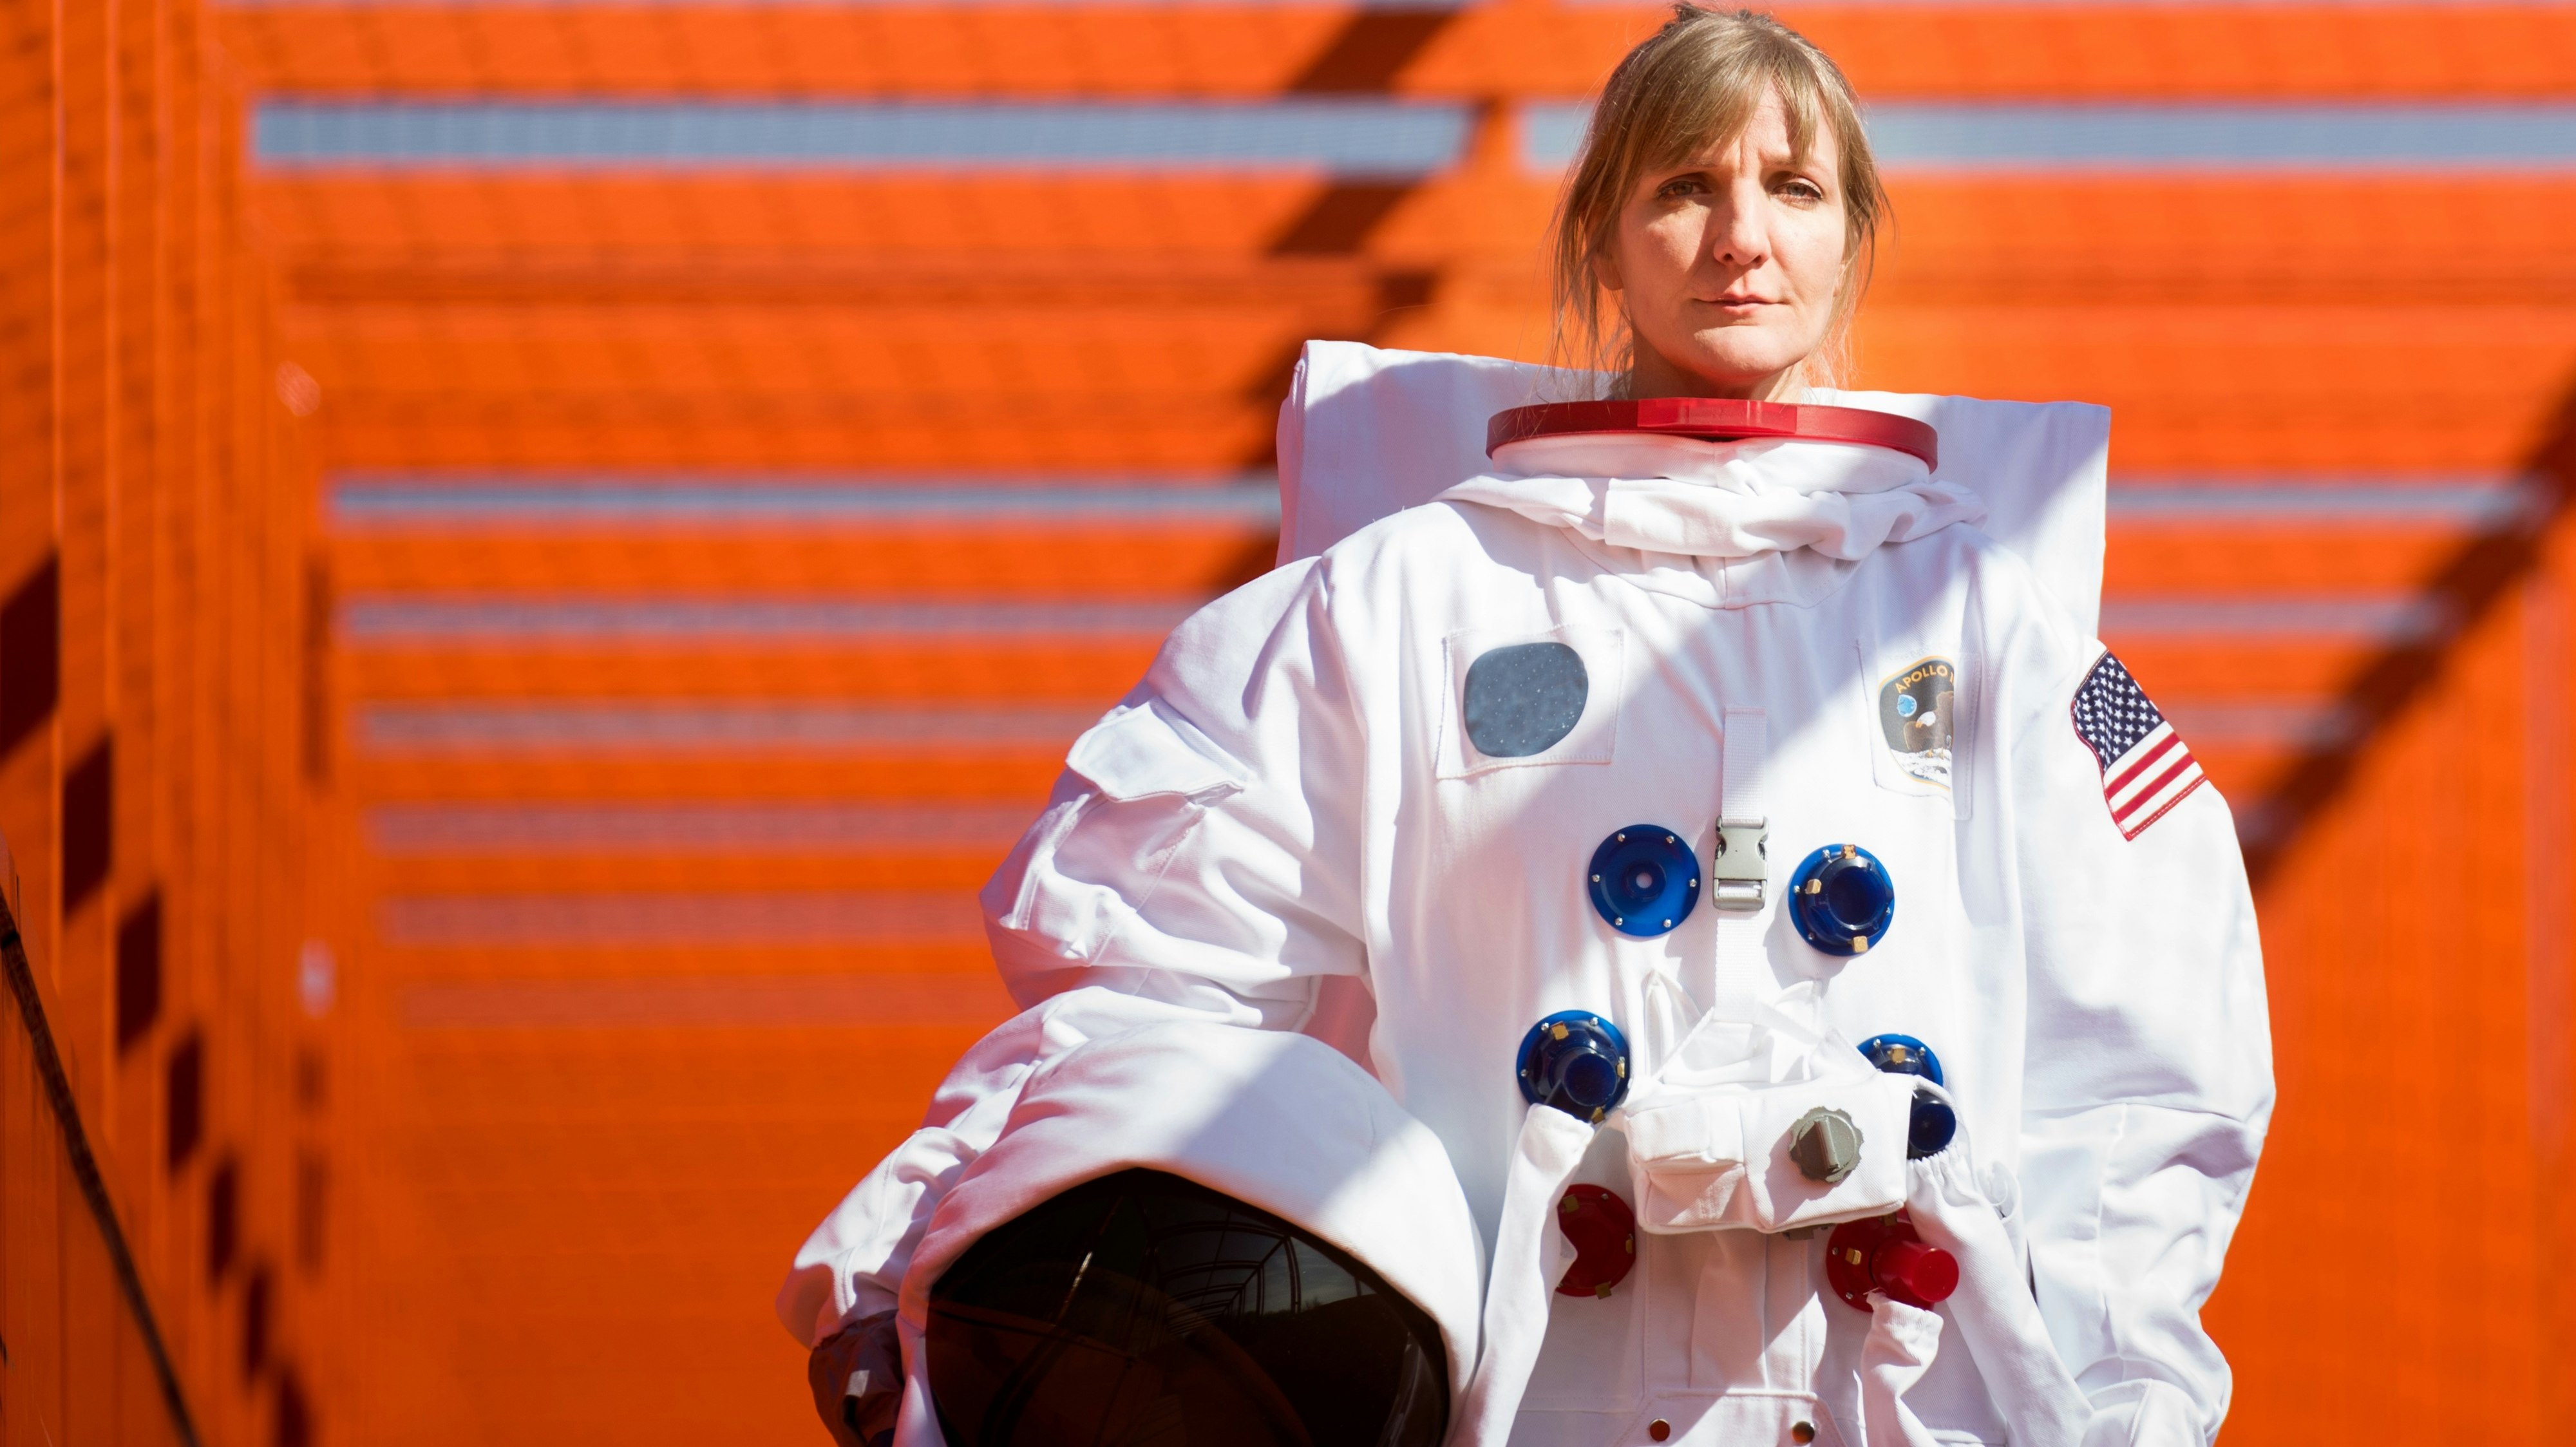 "Liebling der Schwerkraft": Für ihr aktuelles Programm ließ sich Katinka Buddenkotte als Astronautin ablichten. Copyright: palmpictures